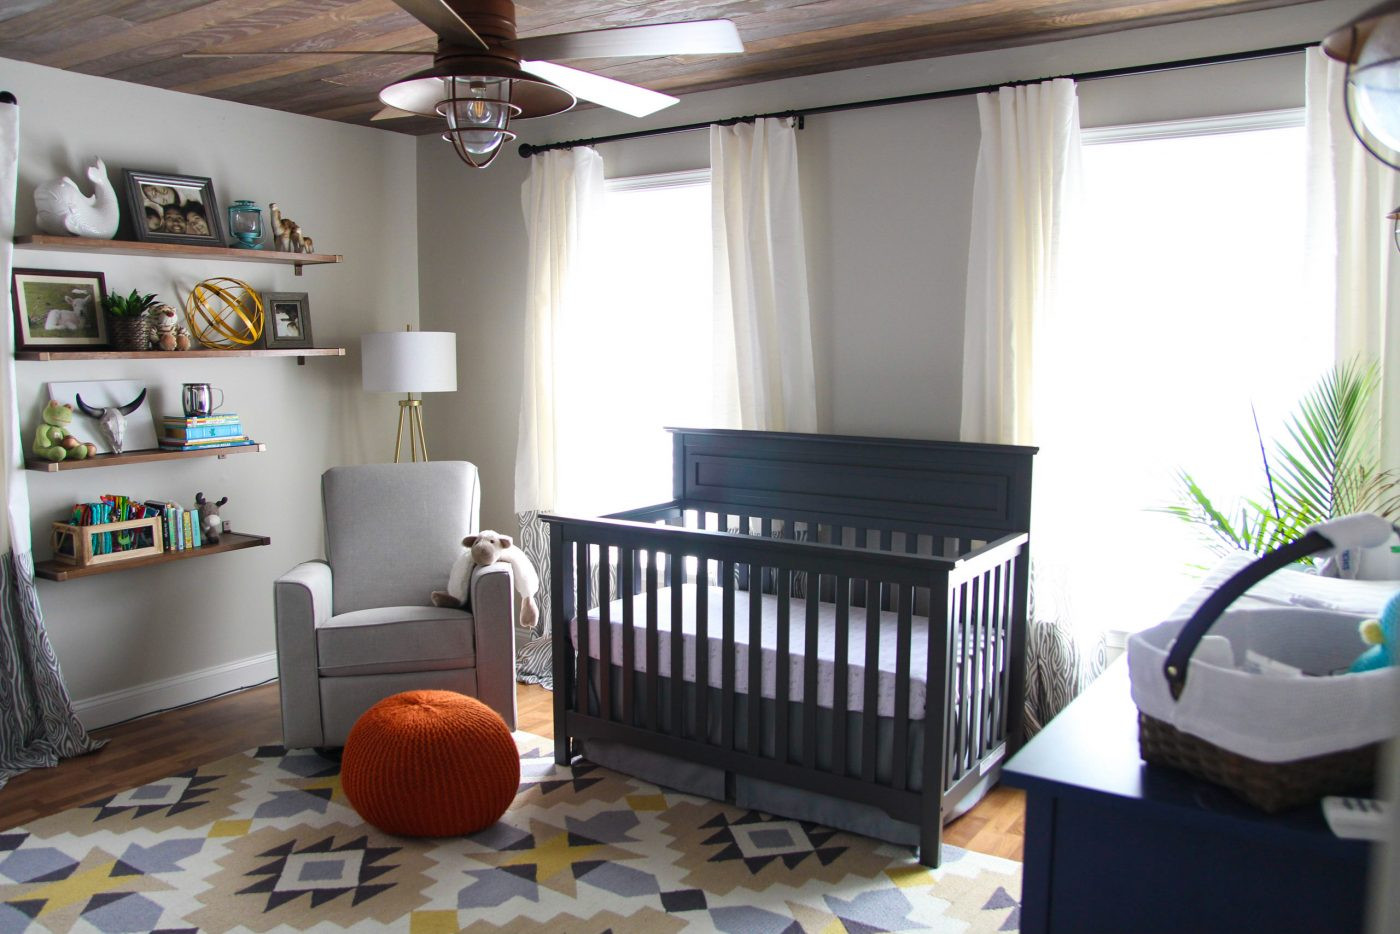 Diy Baby Boy Room Decorations
 Woodland Nursery Decor A Rustic Retreat for a Baby Boy